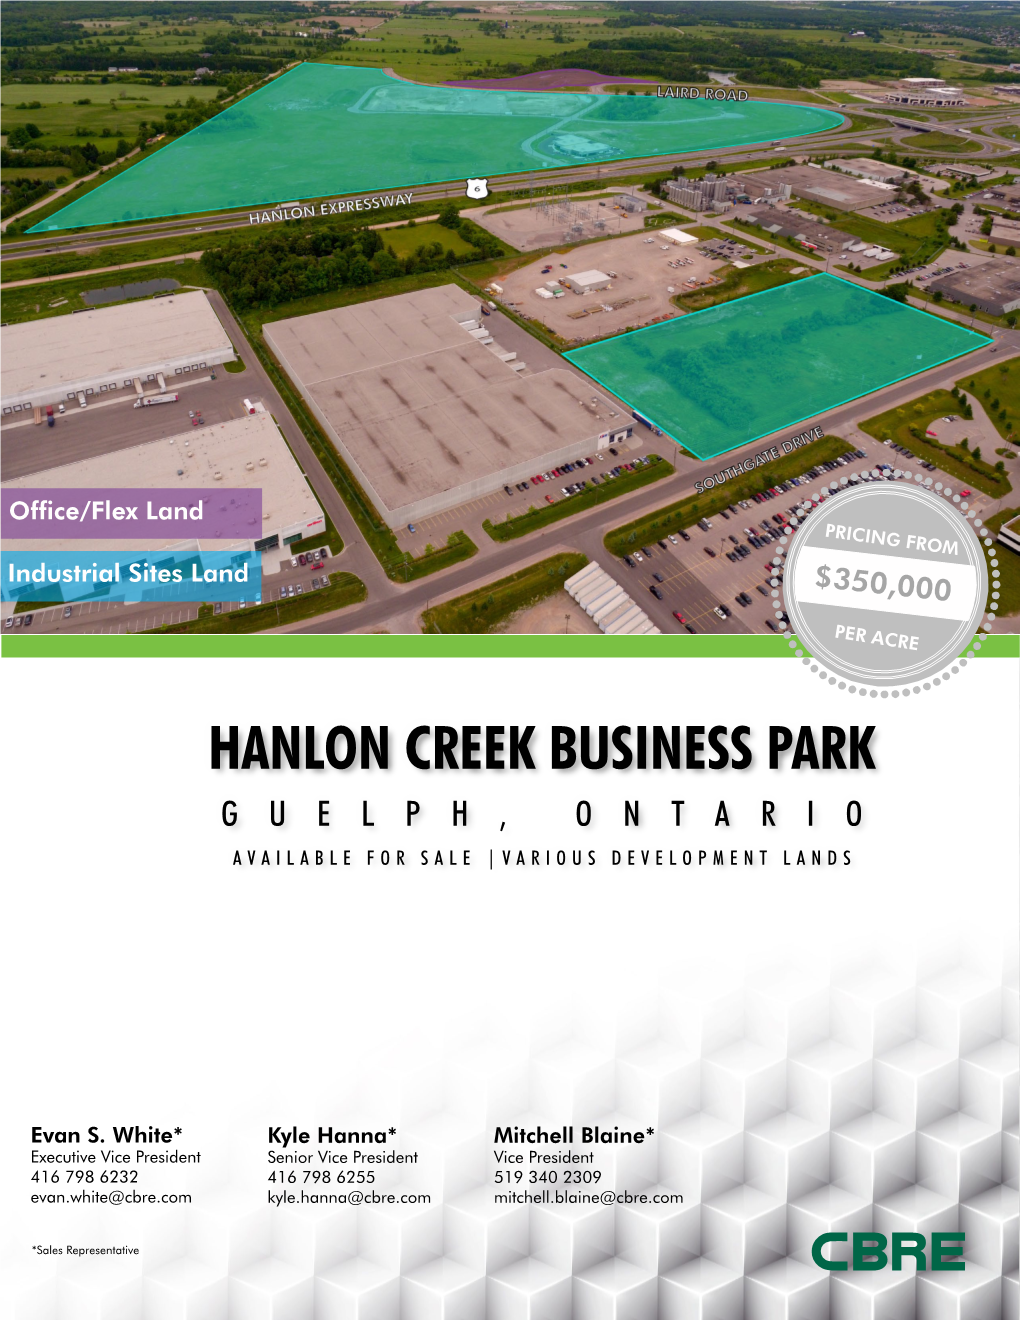 Hanlon Creek Business Park Guelph, Ontario Available for Sale |Various Development Lands